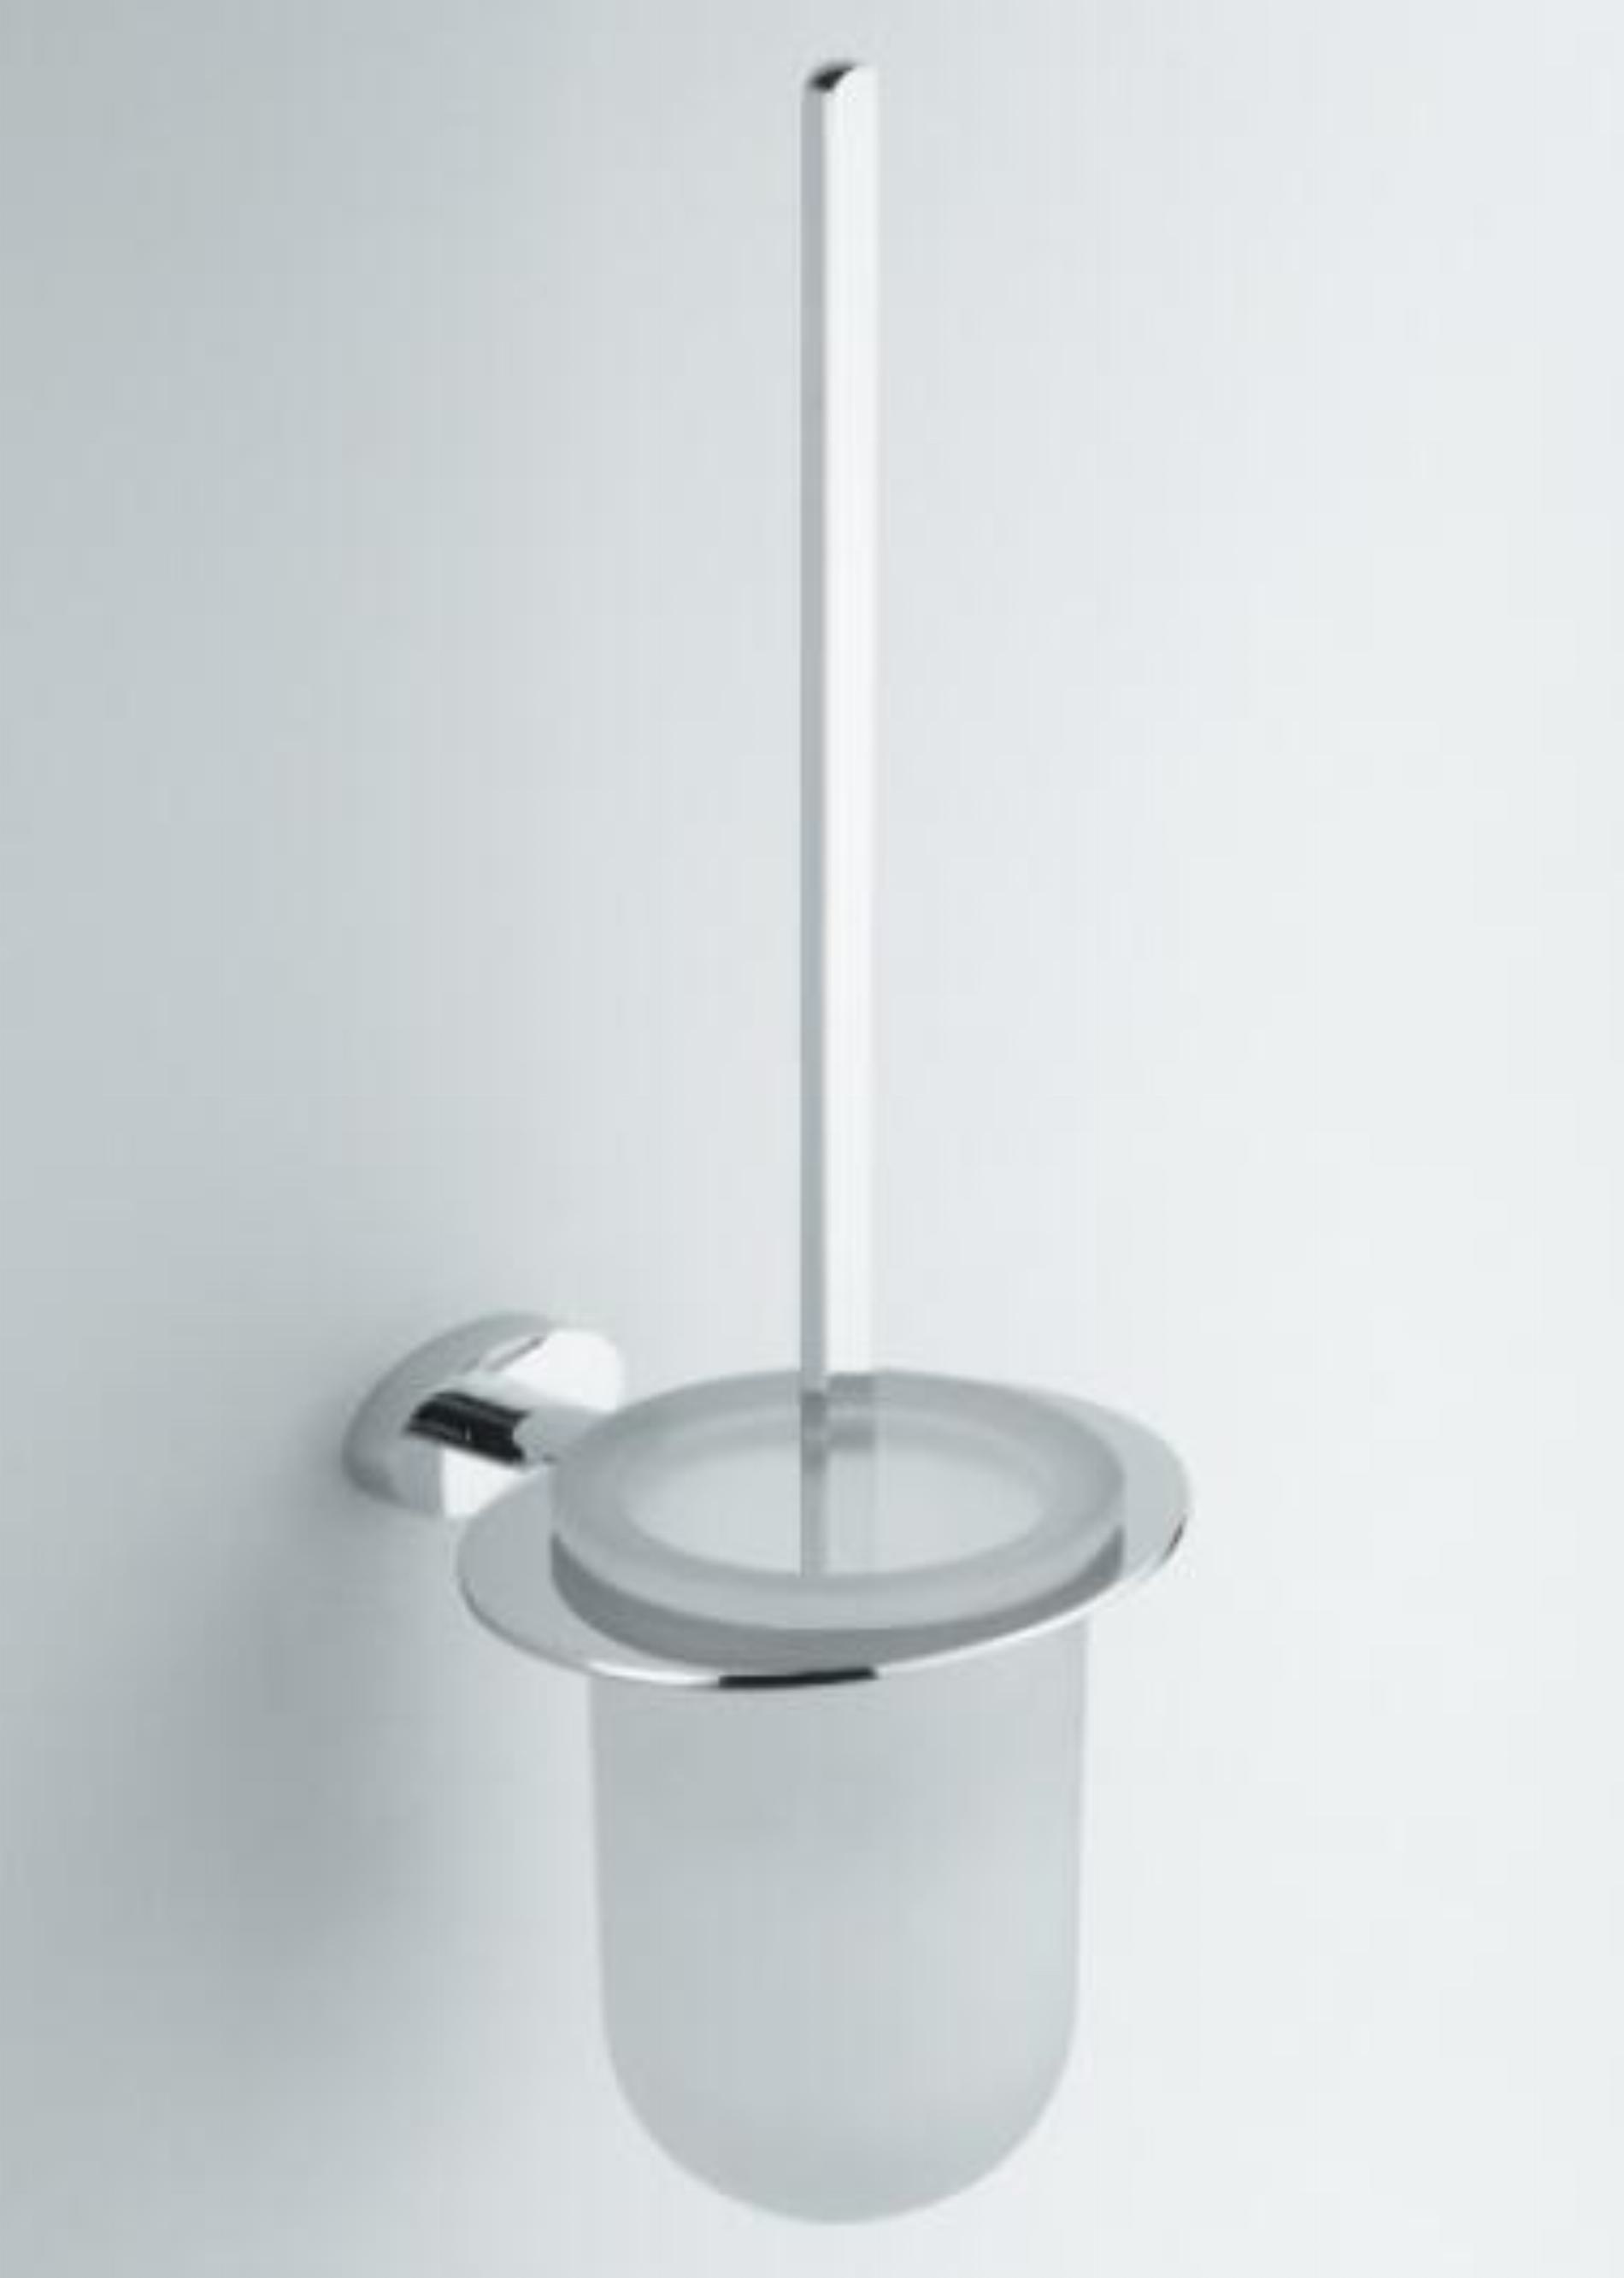 CR-Serie Toilettenbürstengarnitur